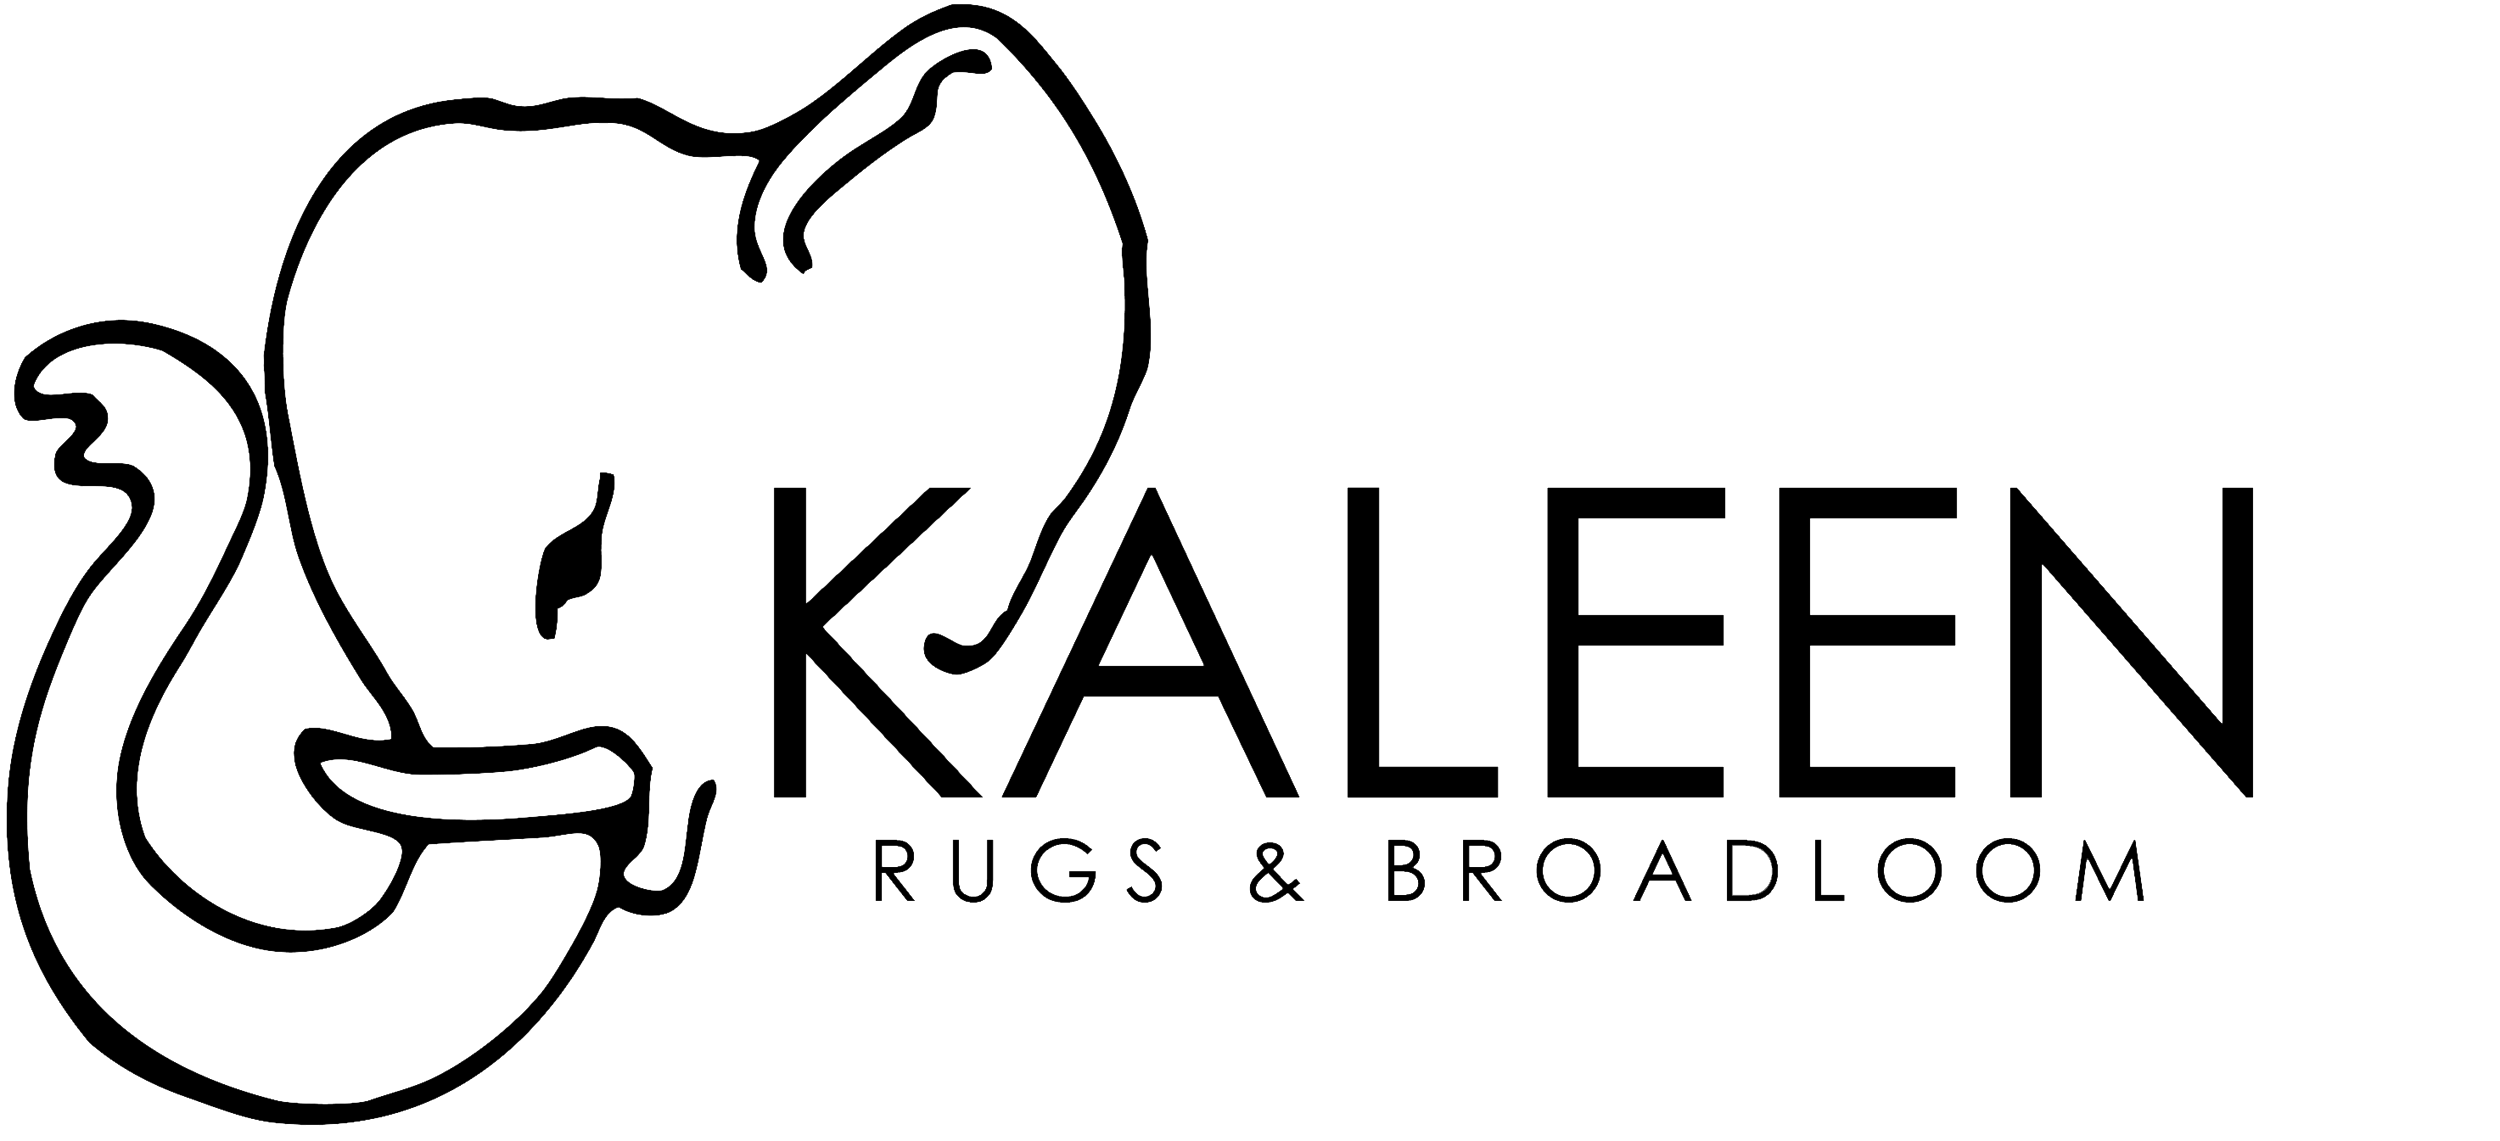 kaleen-logo.png